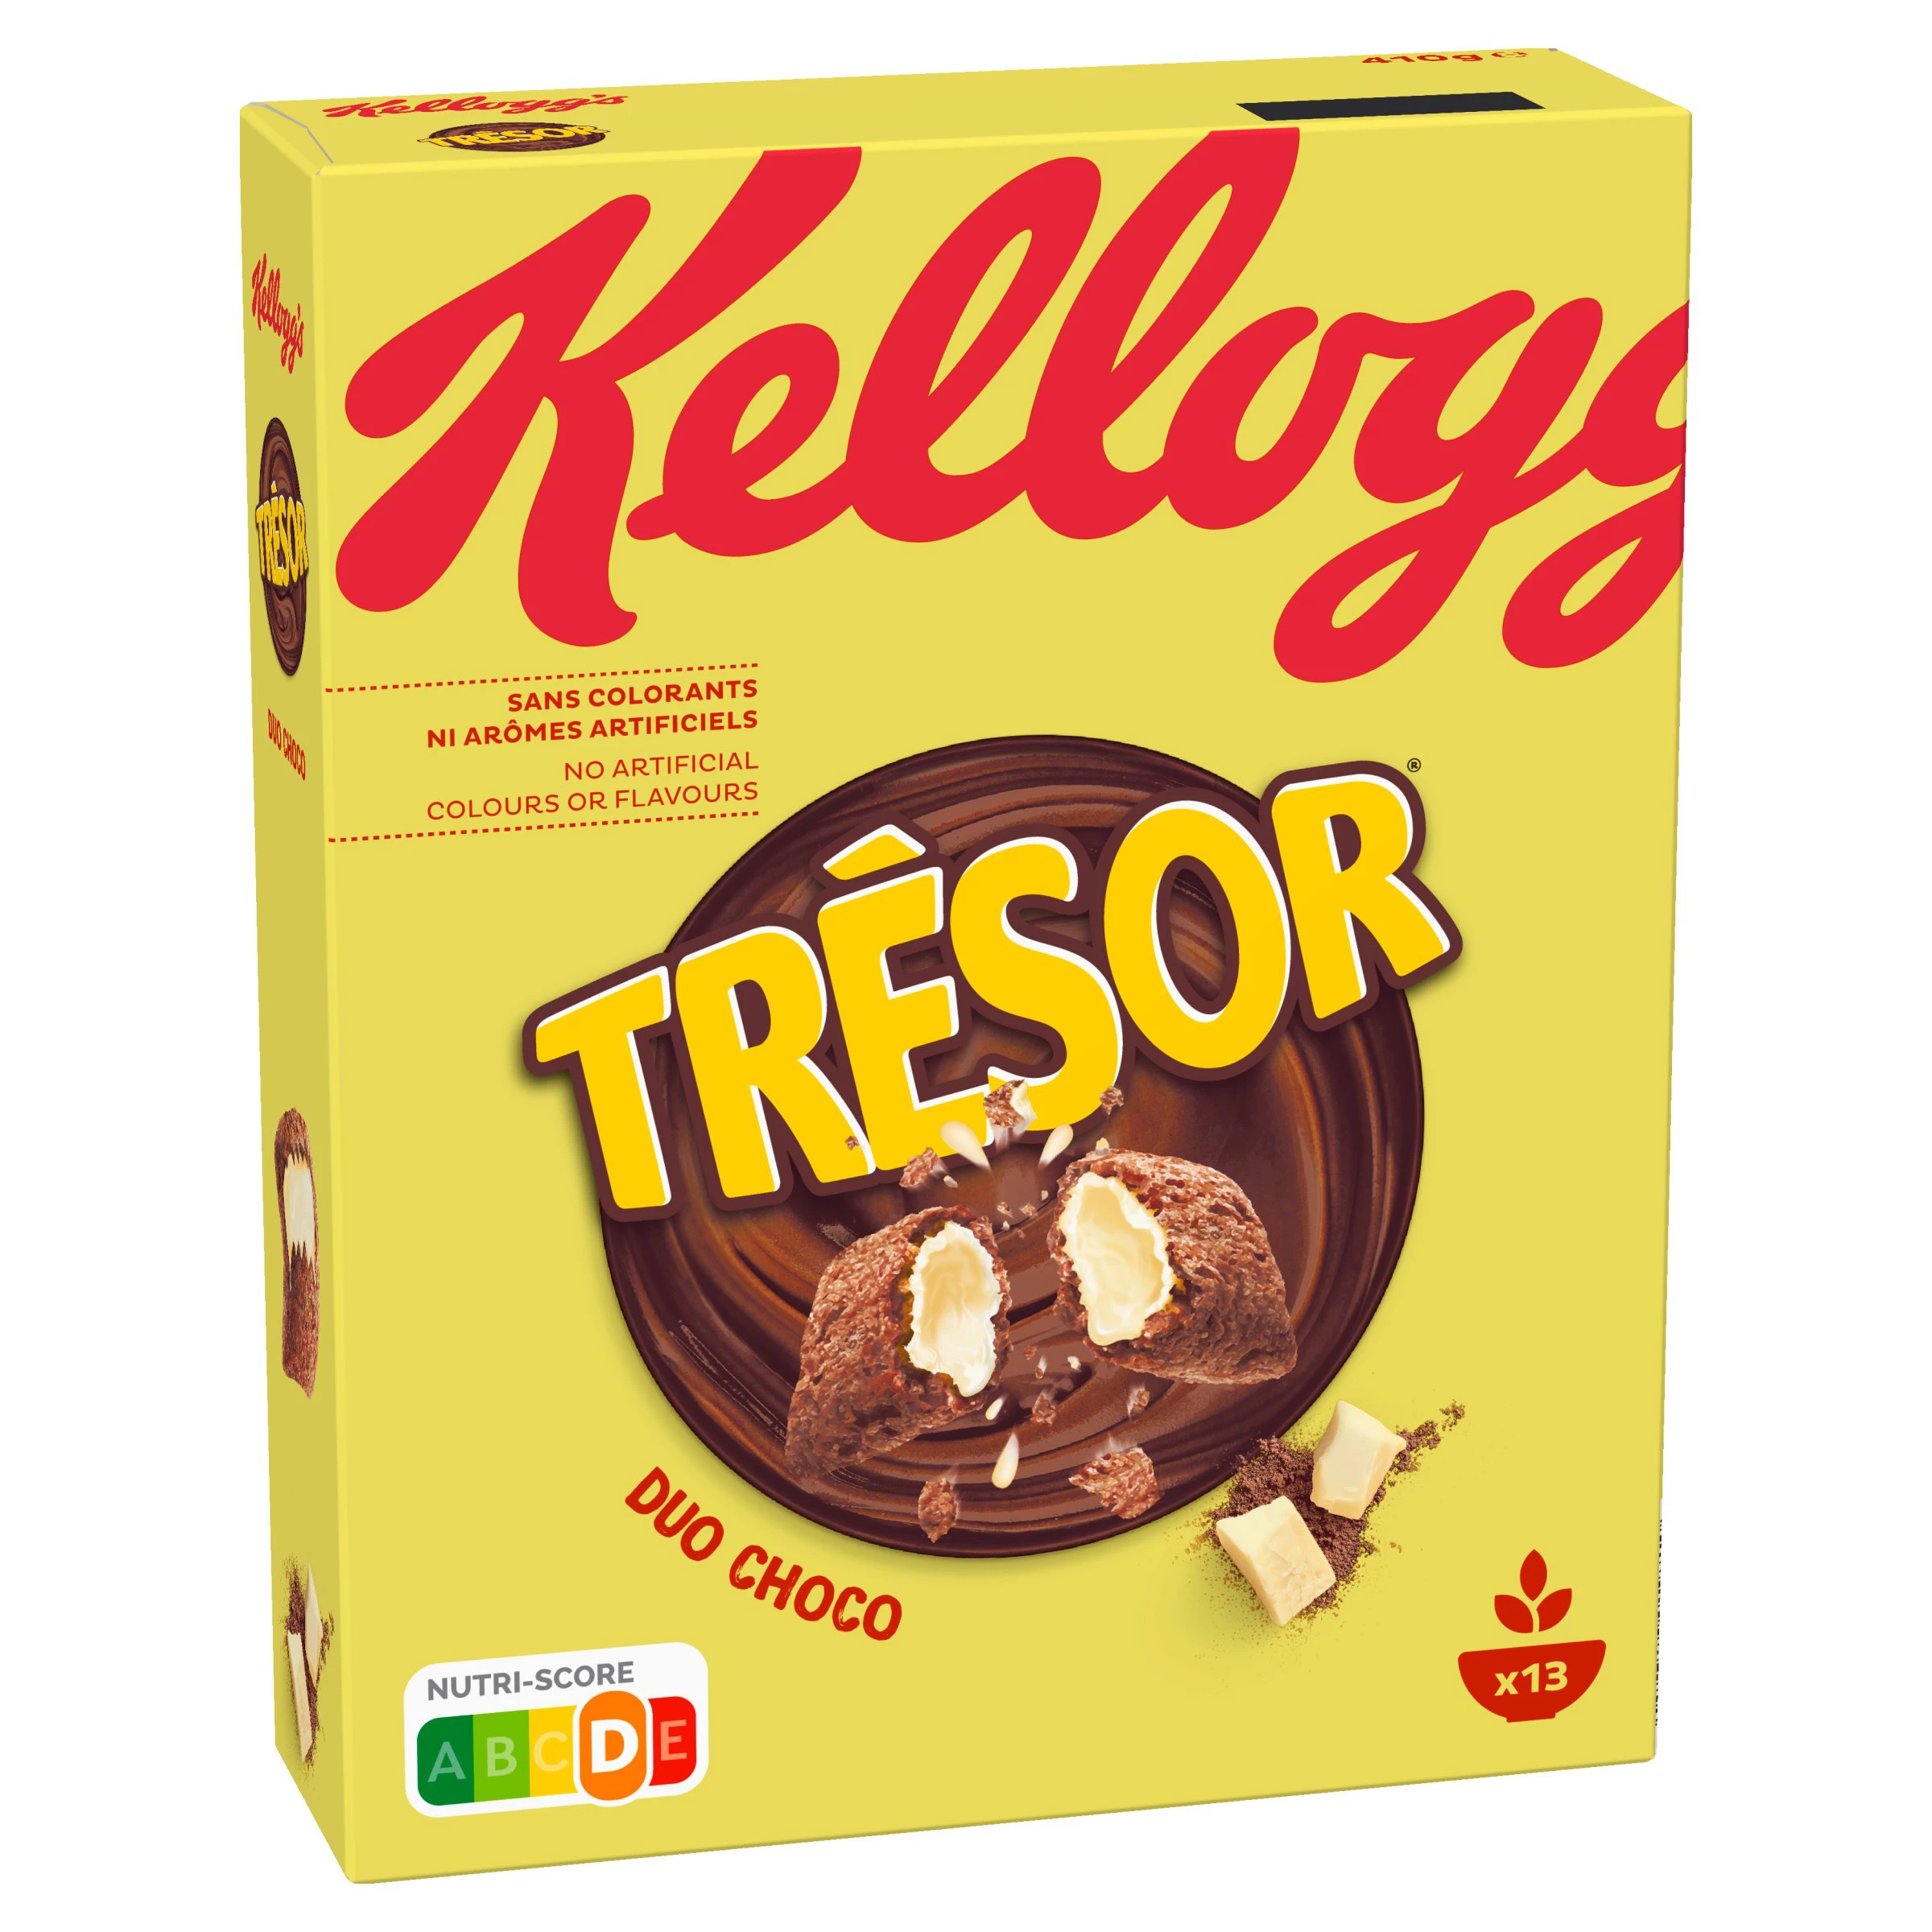 Kellogg's Tresor Duo Choc 410g